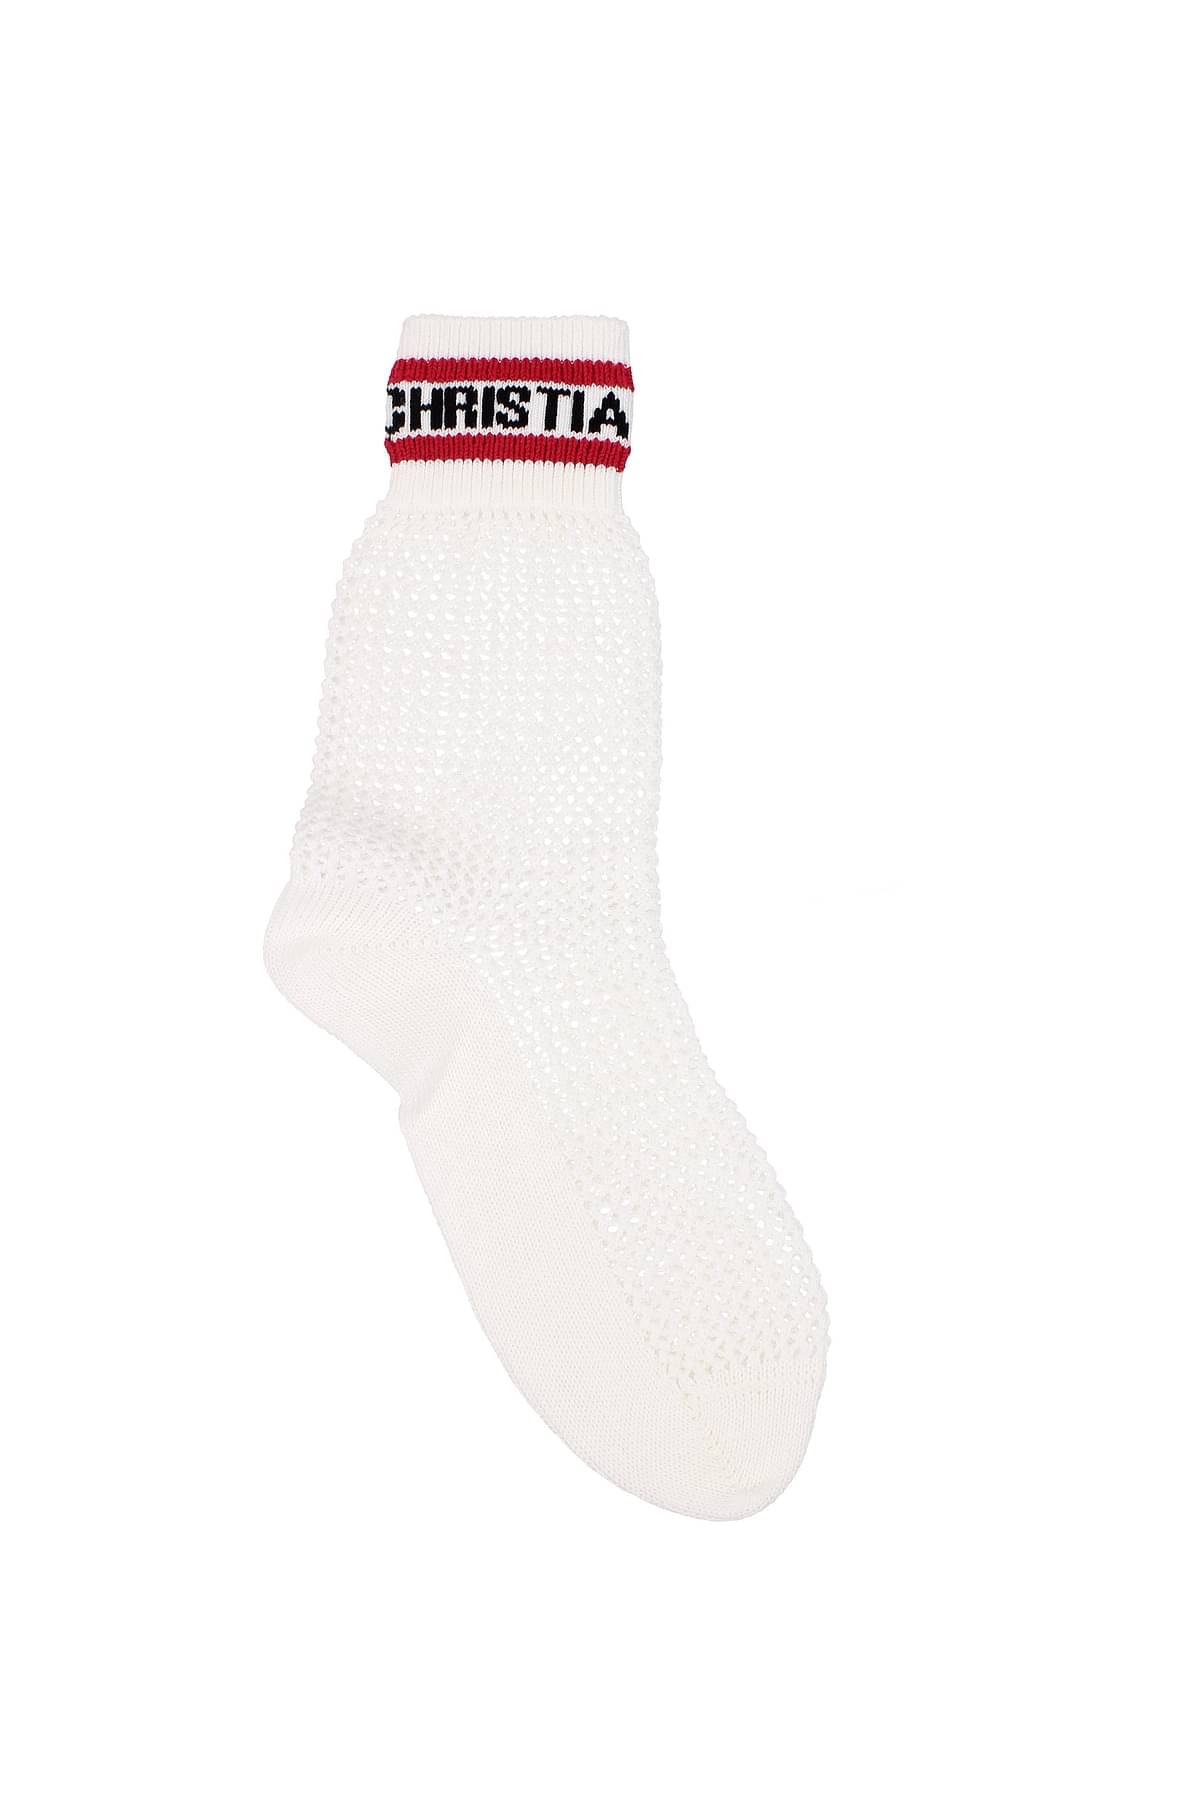 Christian Dior Short socks Women 14SOC503A203402 Cotton White Lipstick 288€